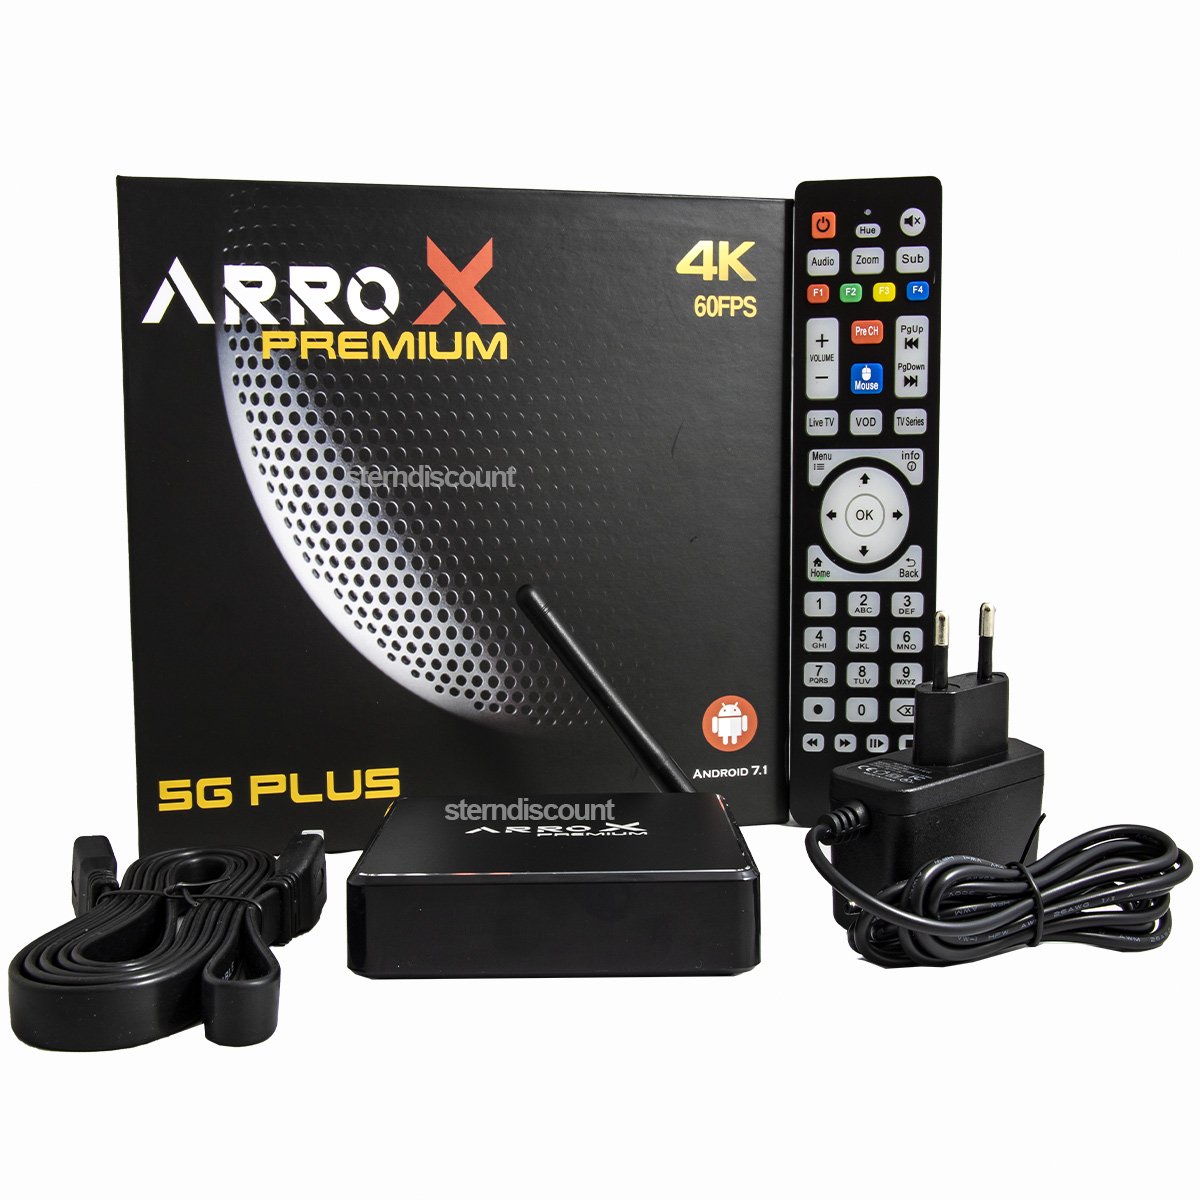 Arrox Premium 4k 5g android tv box